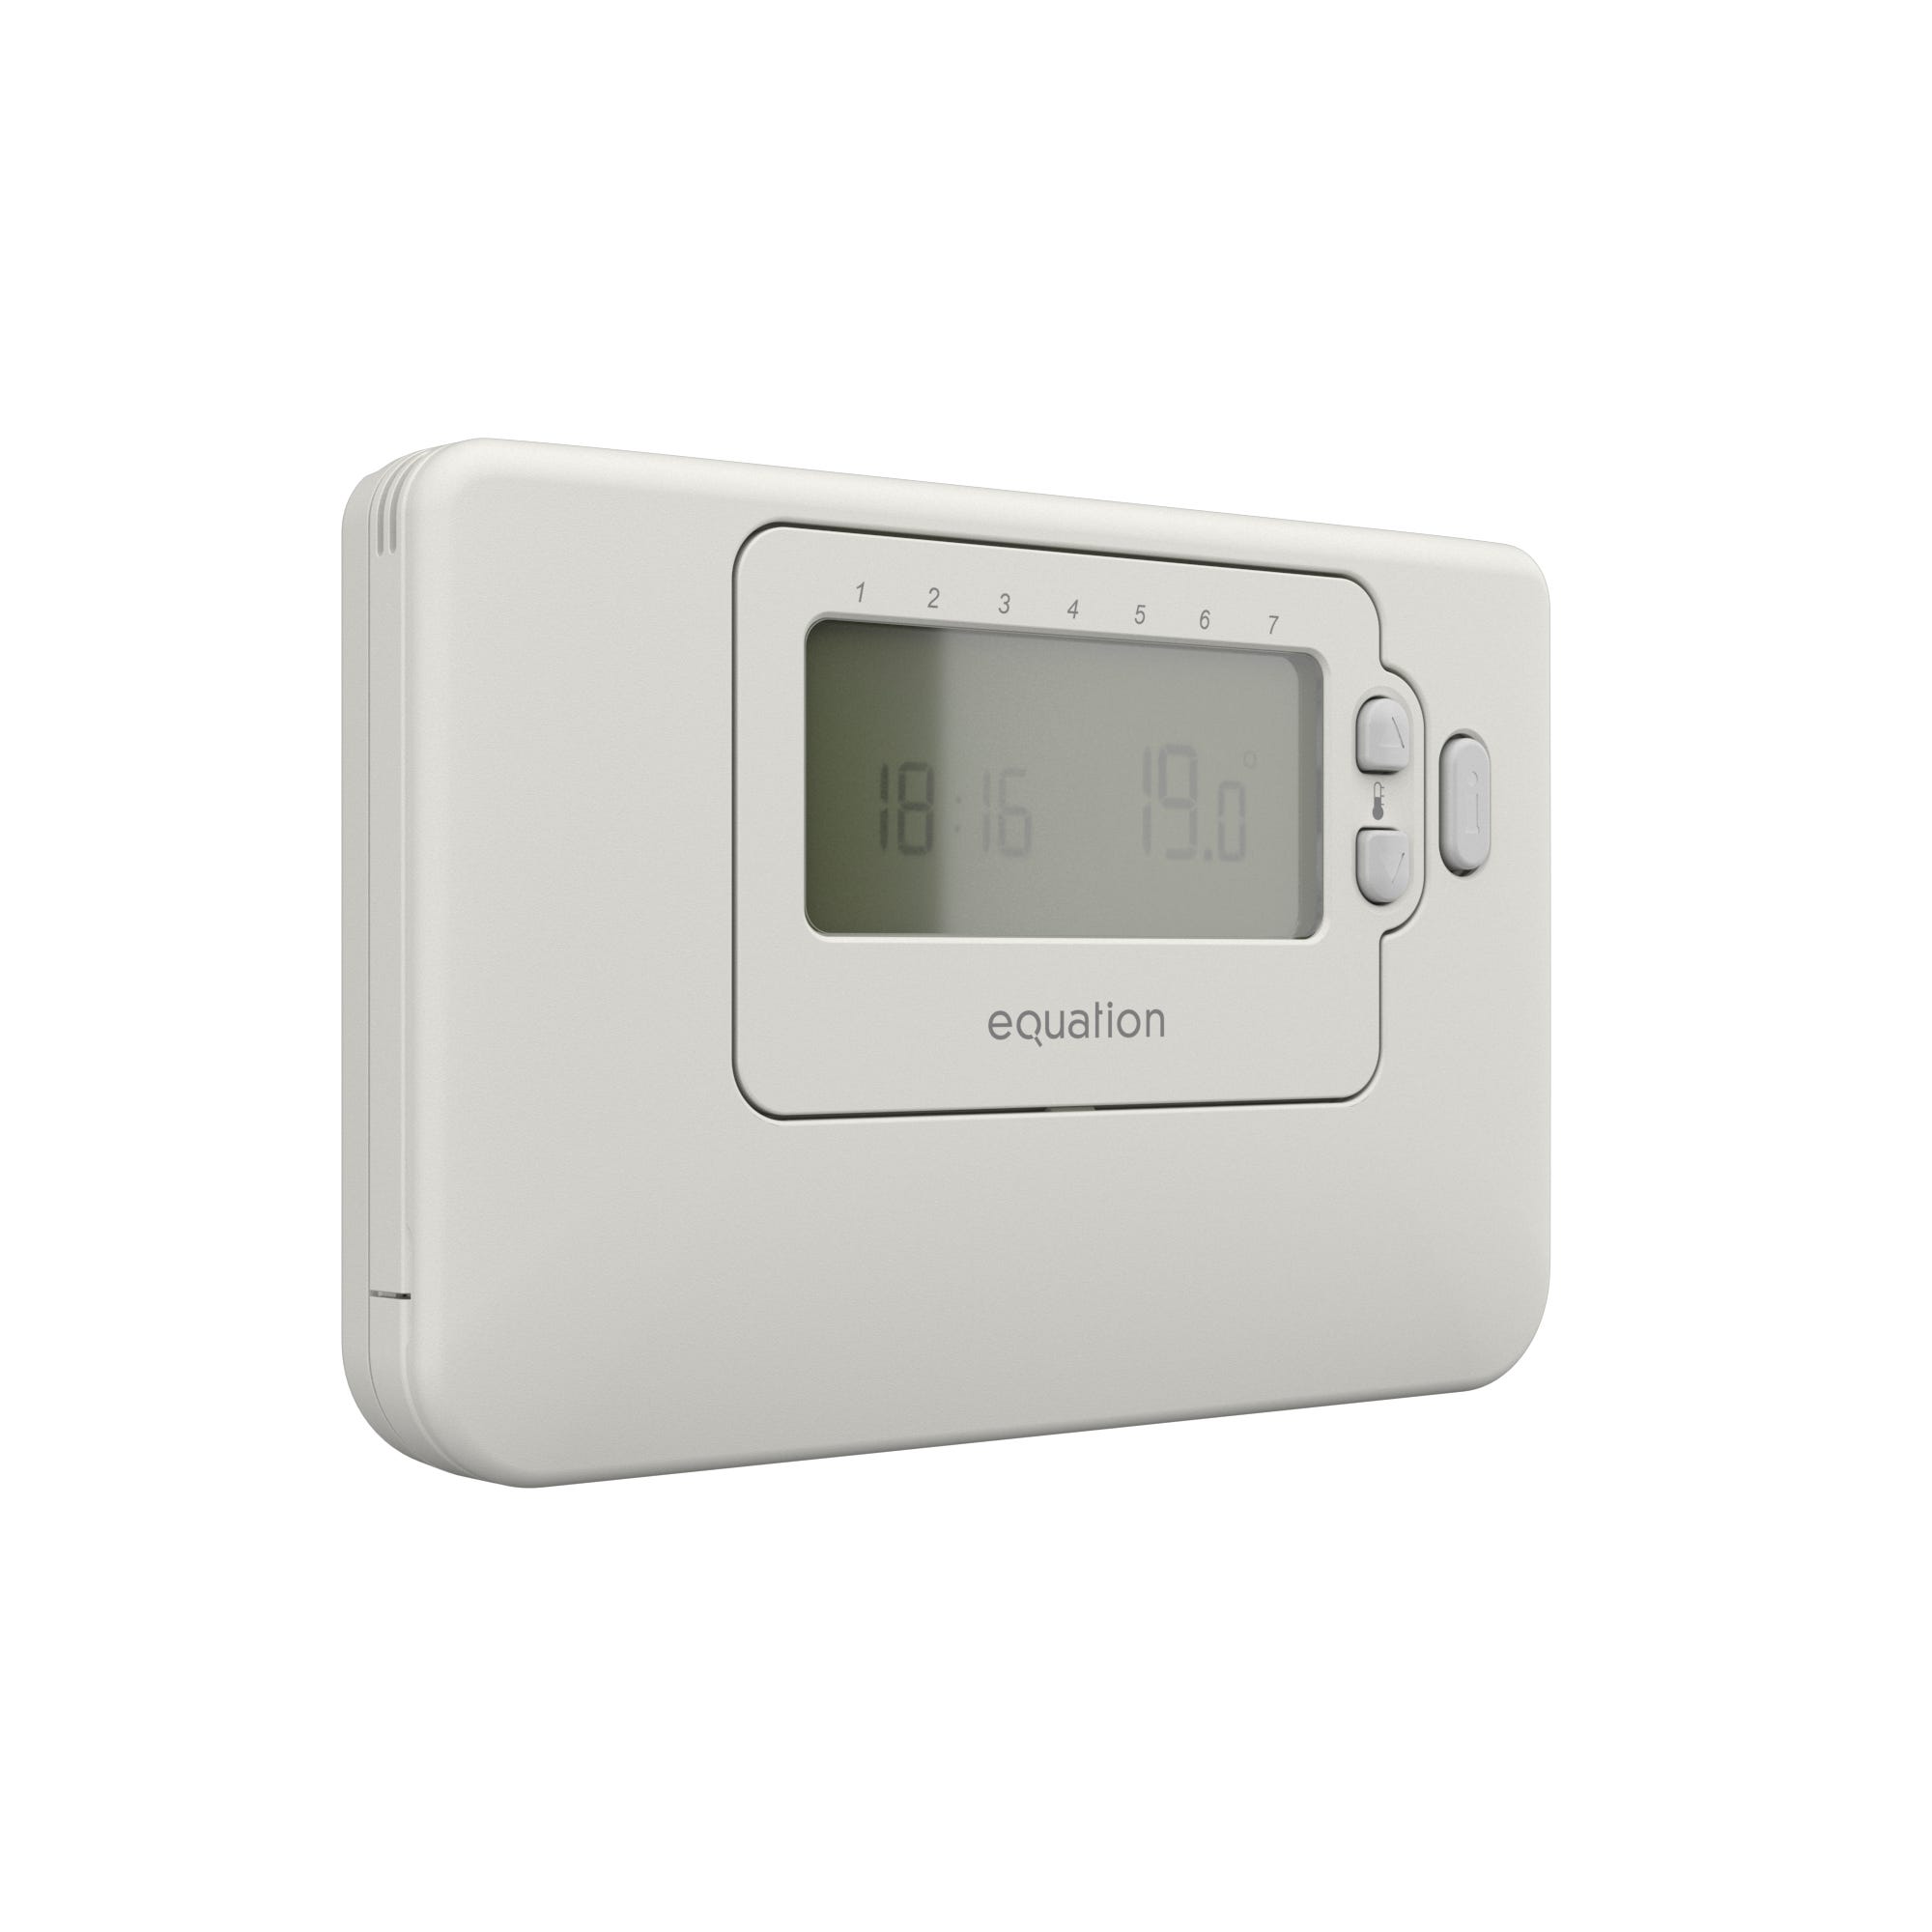 Thermostat d'Ambiance Filaire Contact sec Programmable AD 337 De Dietrich  Compatible toutes chaudières